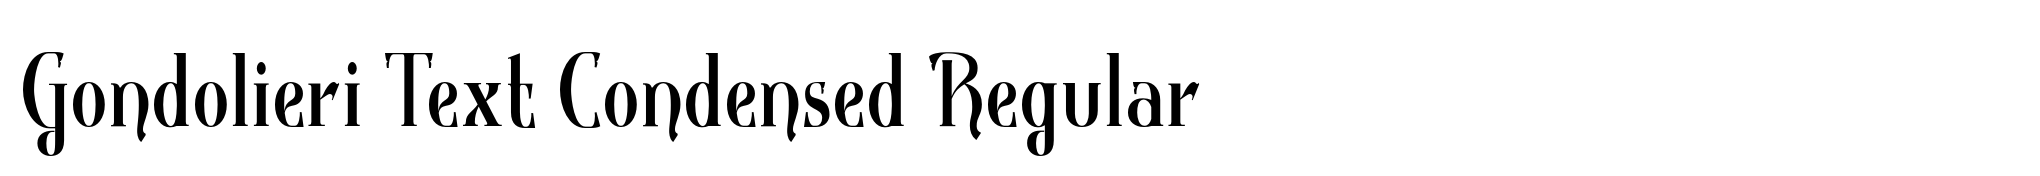 Gondolieri Text Condensed Regular image